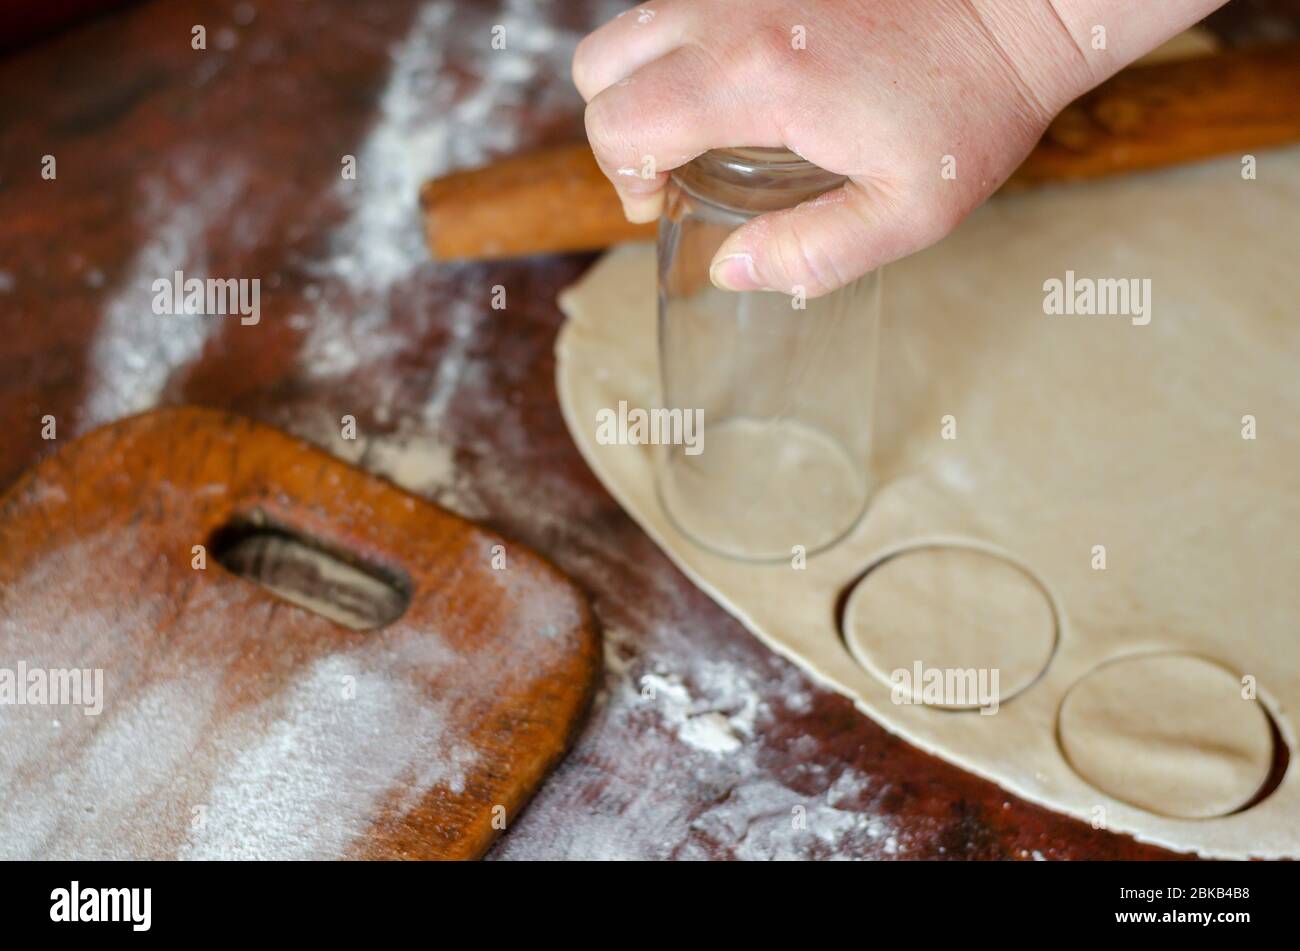 Une main féminine découpe des cercles dans une feuille de pâte avec un verre.  Pâte à pâte fine roulée pour boulettes de viande sur la table de cuisine.  Le processus de cuisson